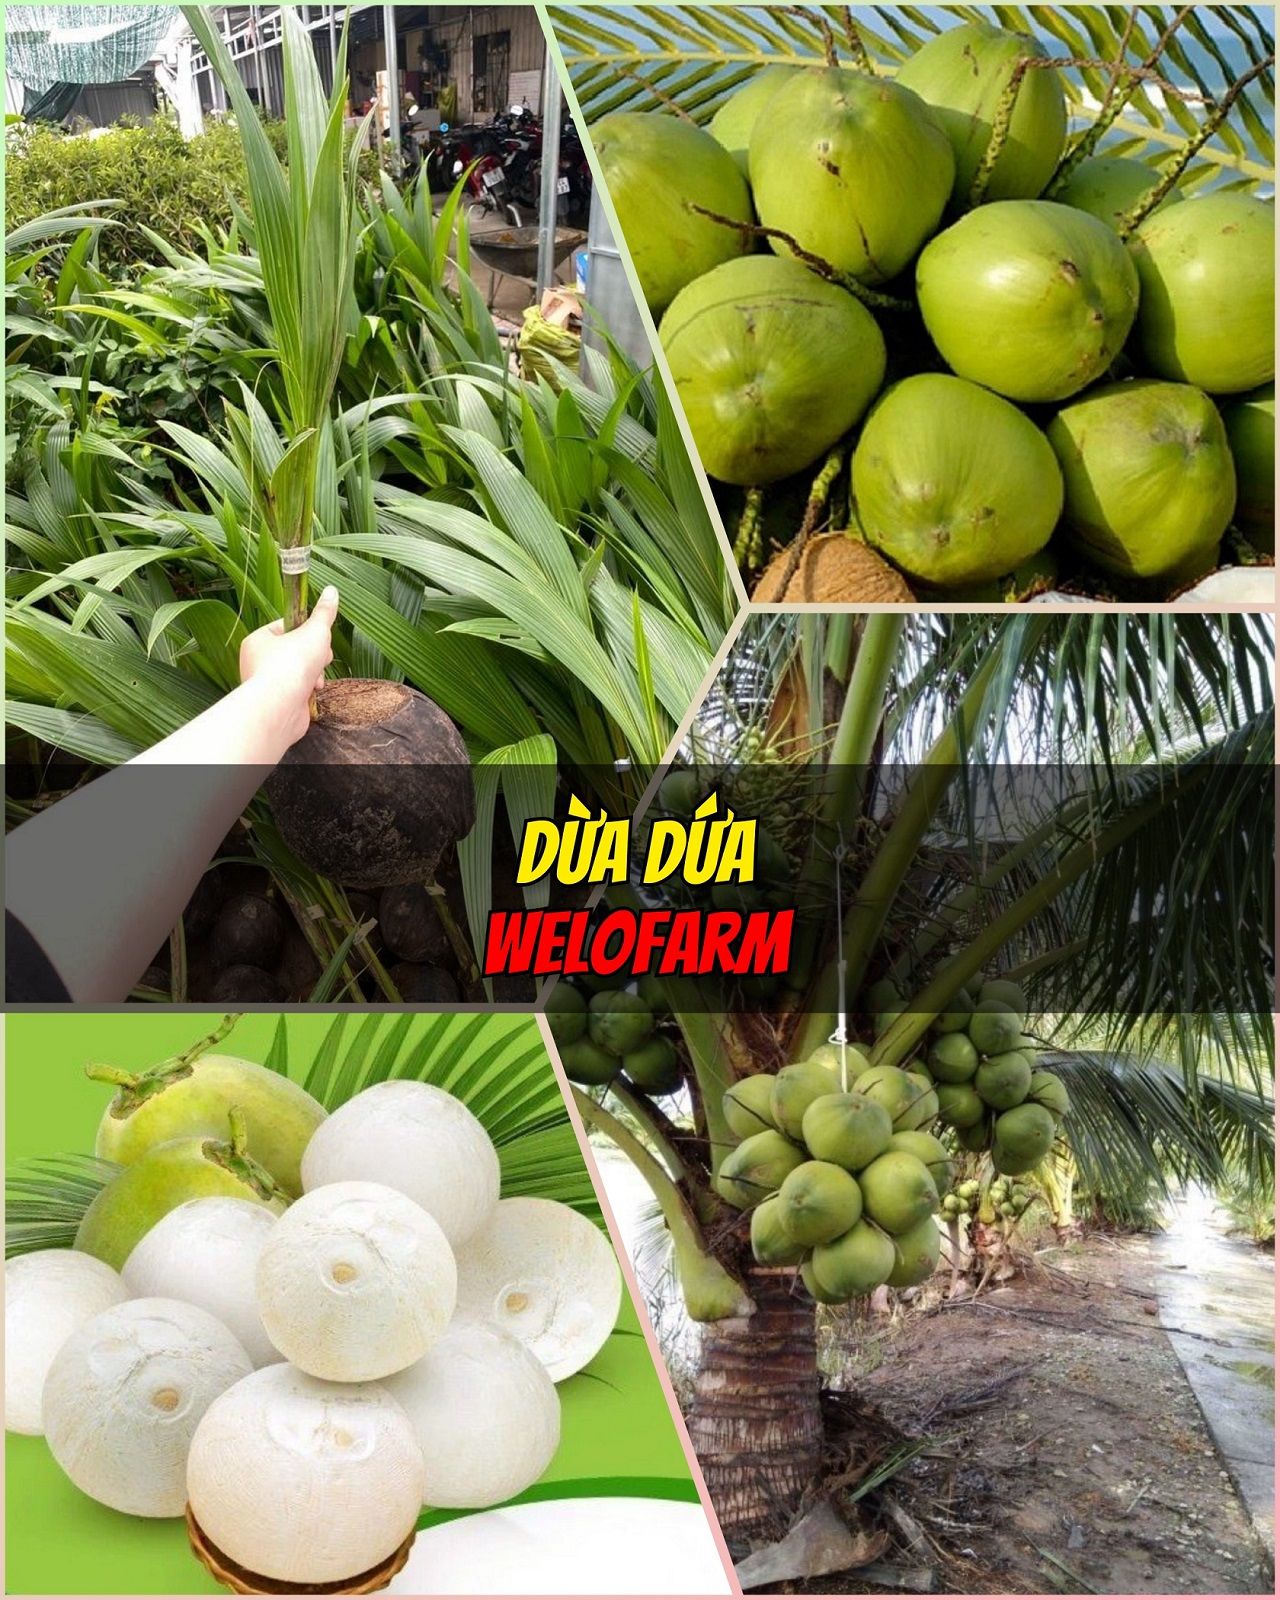 Dừa Dứa